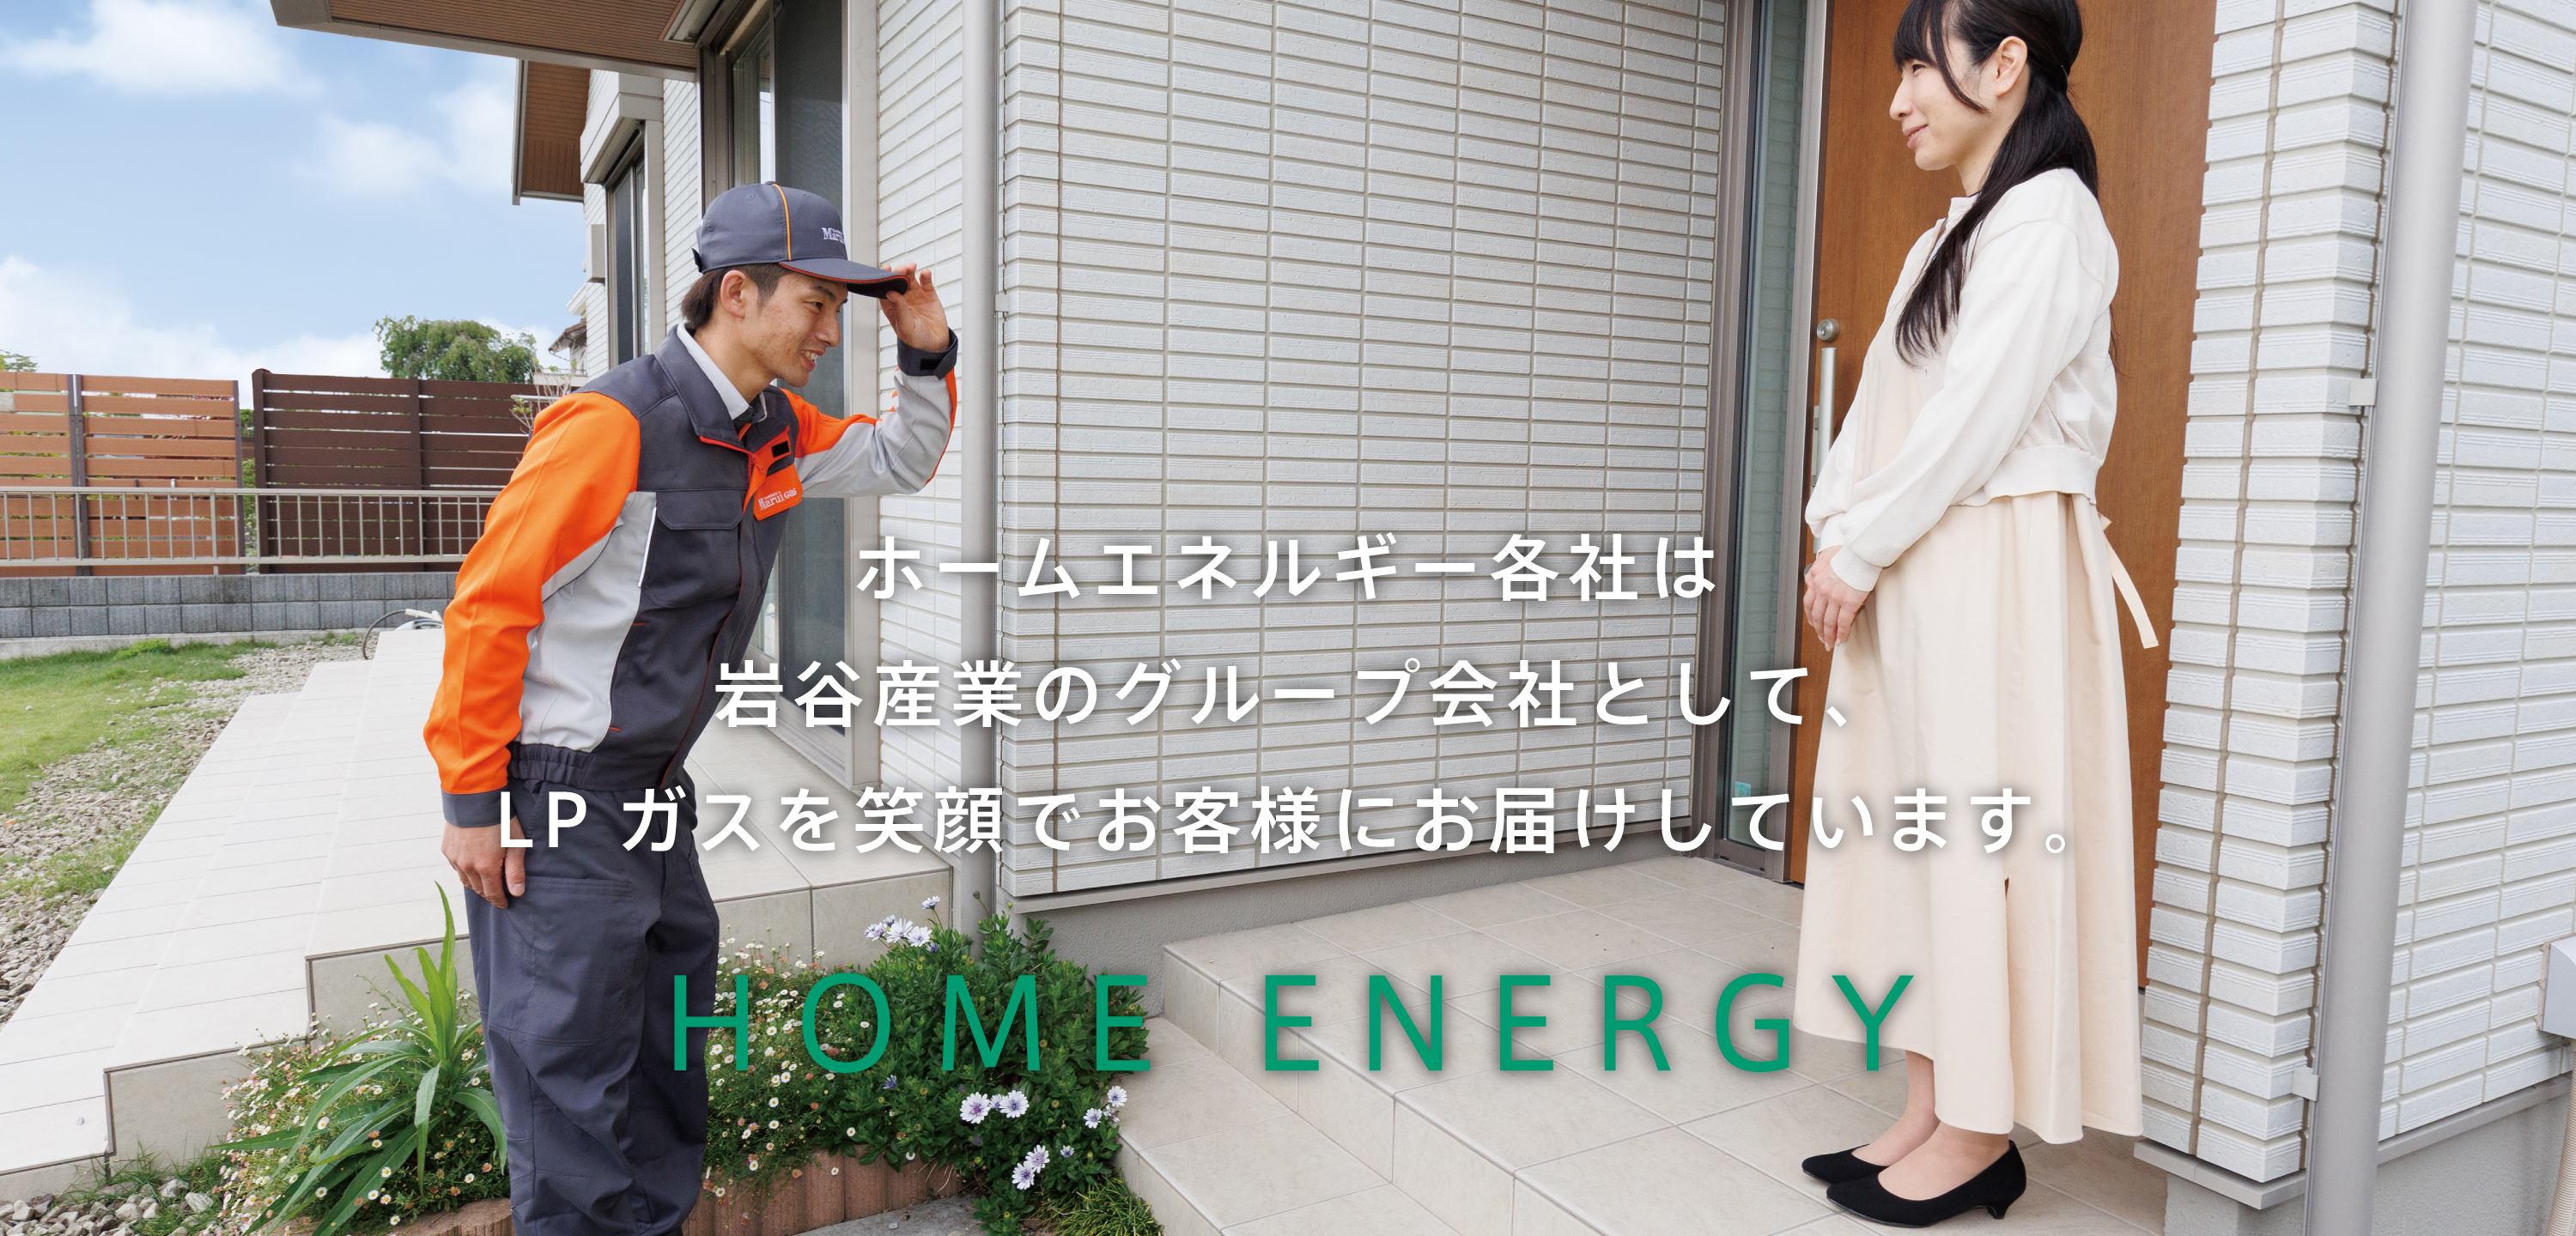 ホームエネルギー各社は岩谷産業のグループ会社として、LPガスを笑顔でお客様にお届けしています。